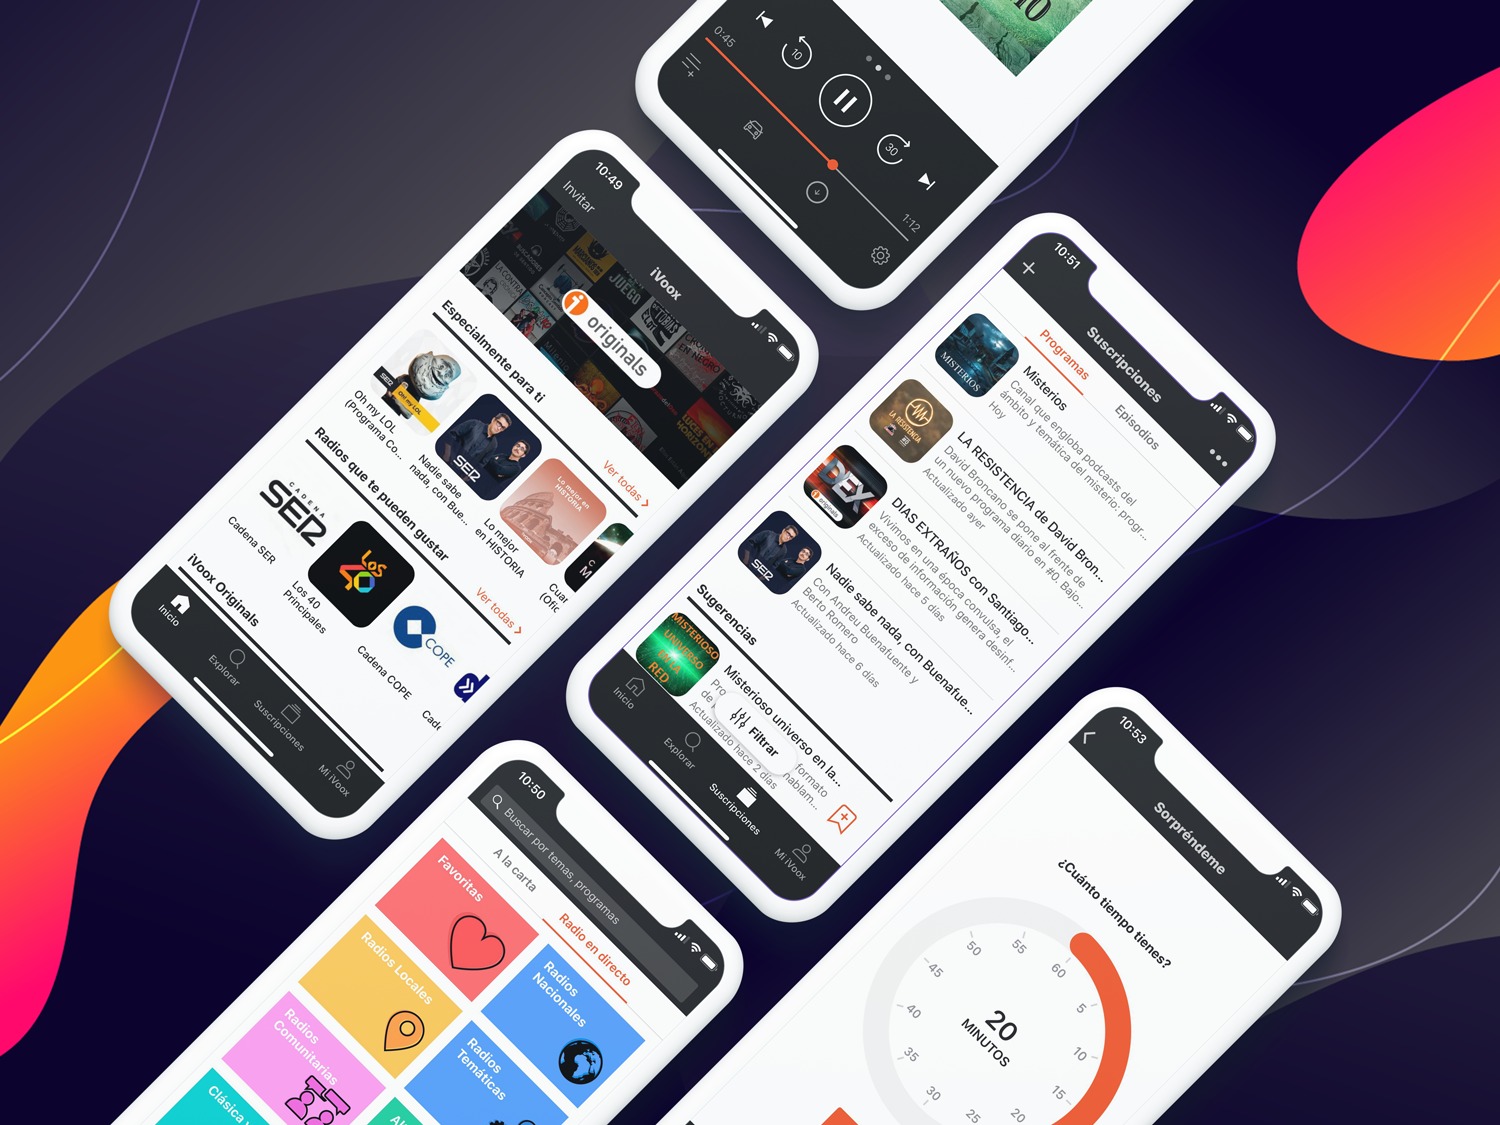 Lanzamos el nuevo diseño de iOS! - iVoox Blog